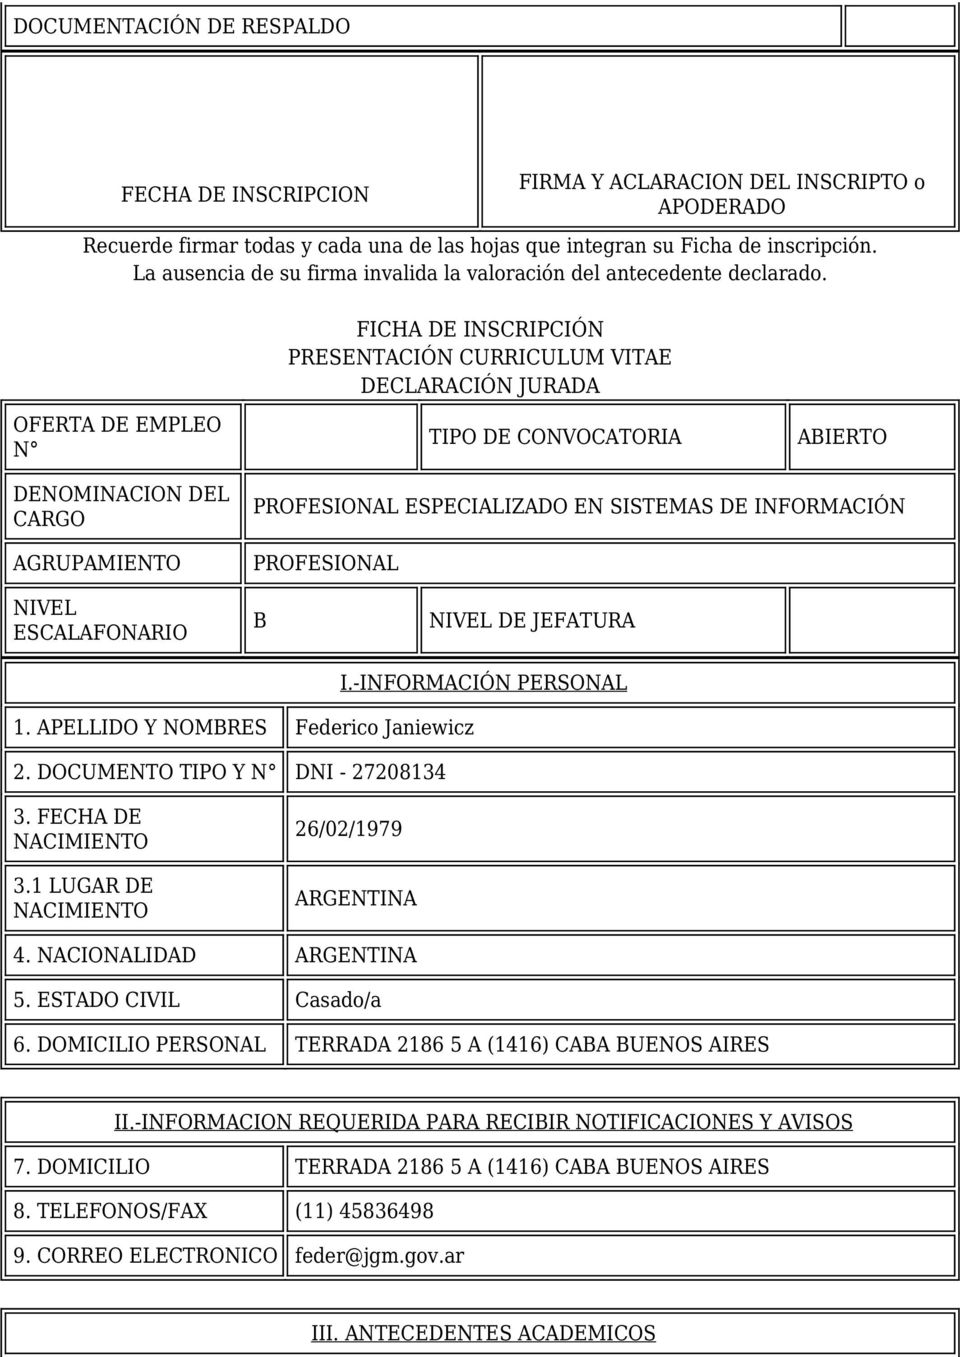 FICHA DE INSCRIPCIÓN PRESENTACIÓN CURRICULUM VITAE DECLARACIÓN JURADA OFERTA DE EMPLEO N TIPO DE CONVOCATORIA ABIERTO DENOMINACION DEL CARGO AGRUPAMIENTO NIVEL ESCALAFONARIO PROFESIONAL ESPECIALIZADO